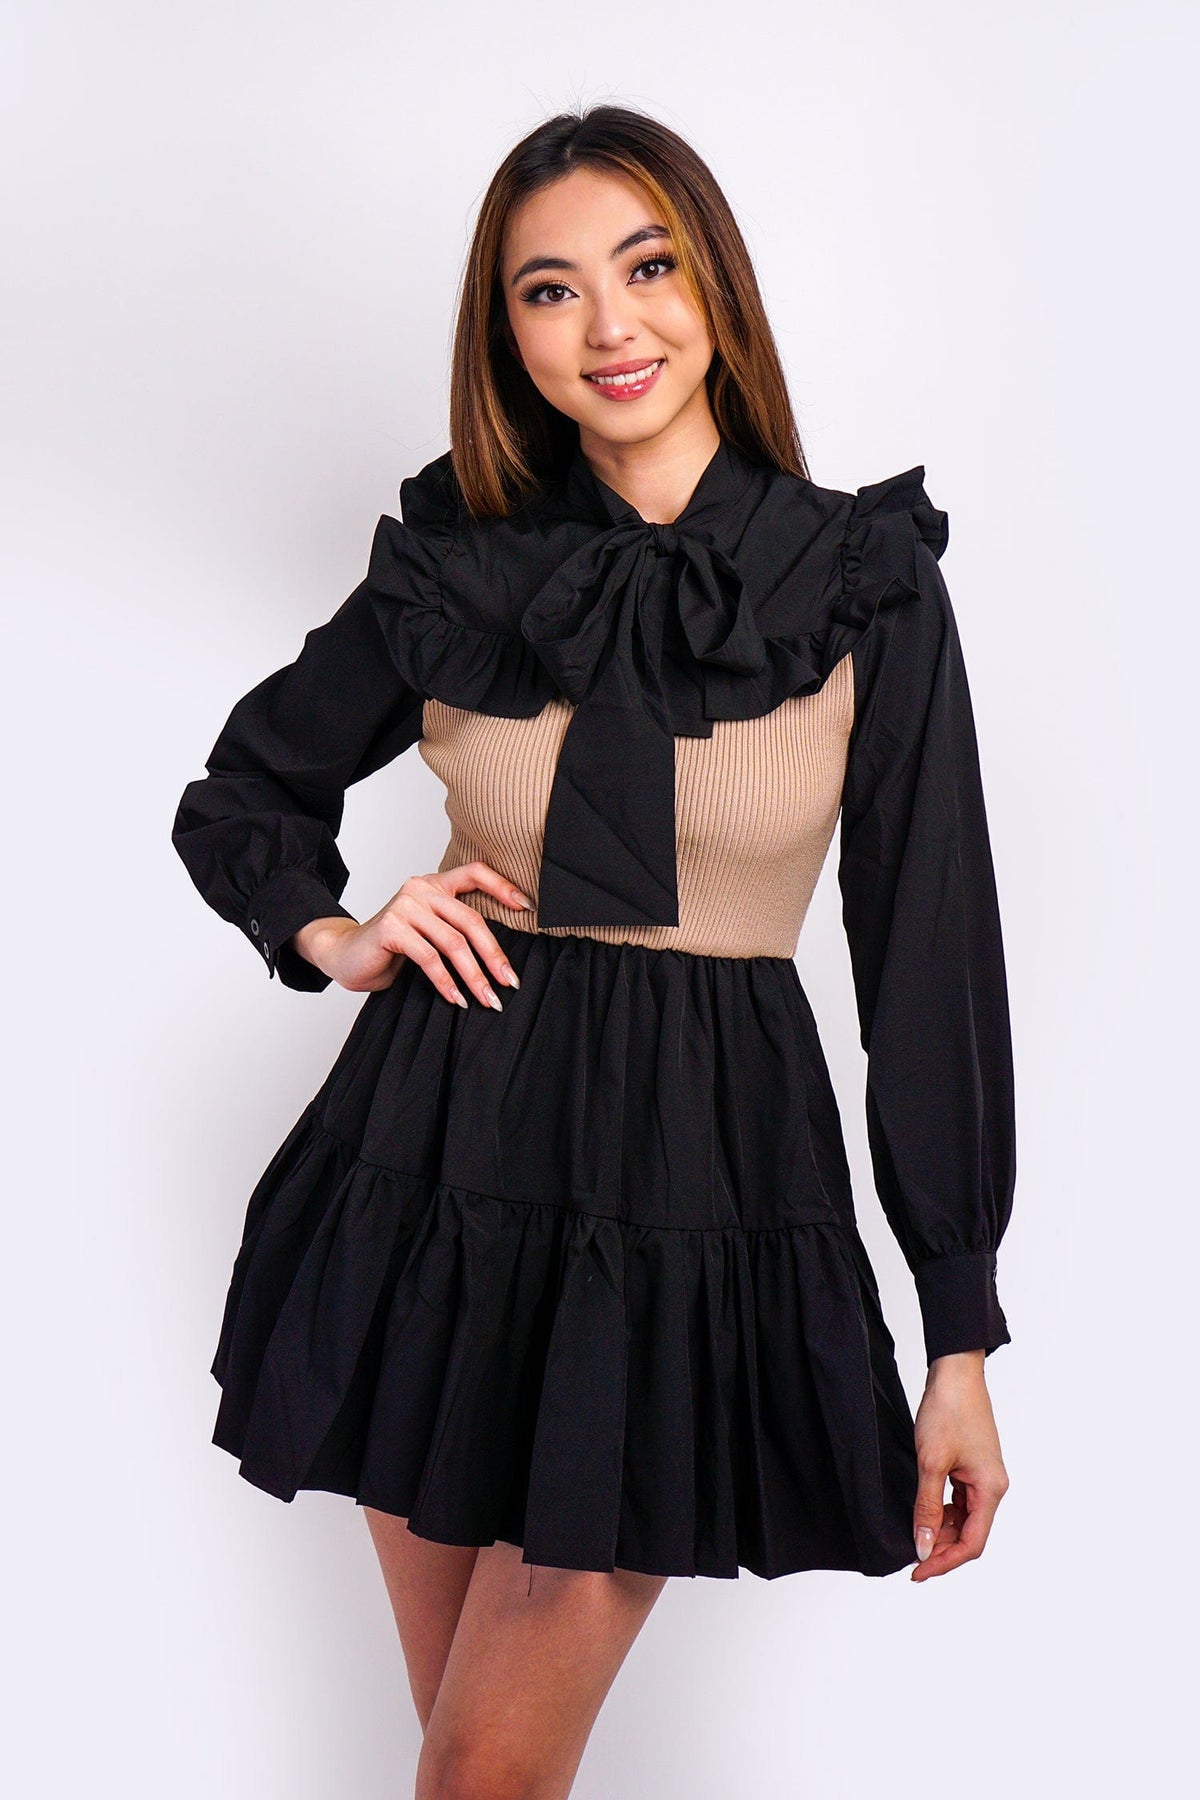 DCD DRESSES Black Tan Knit Dress